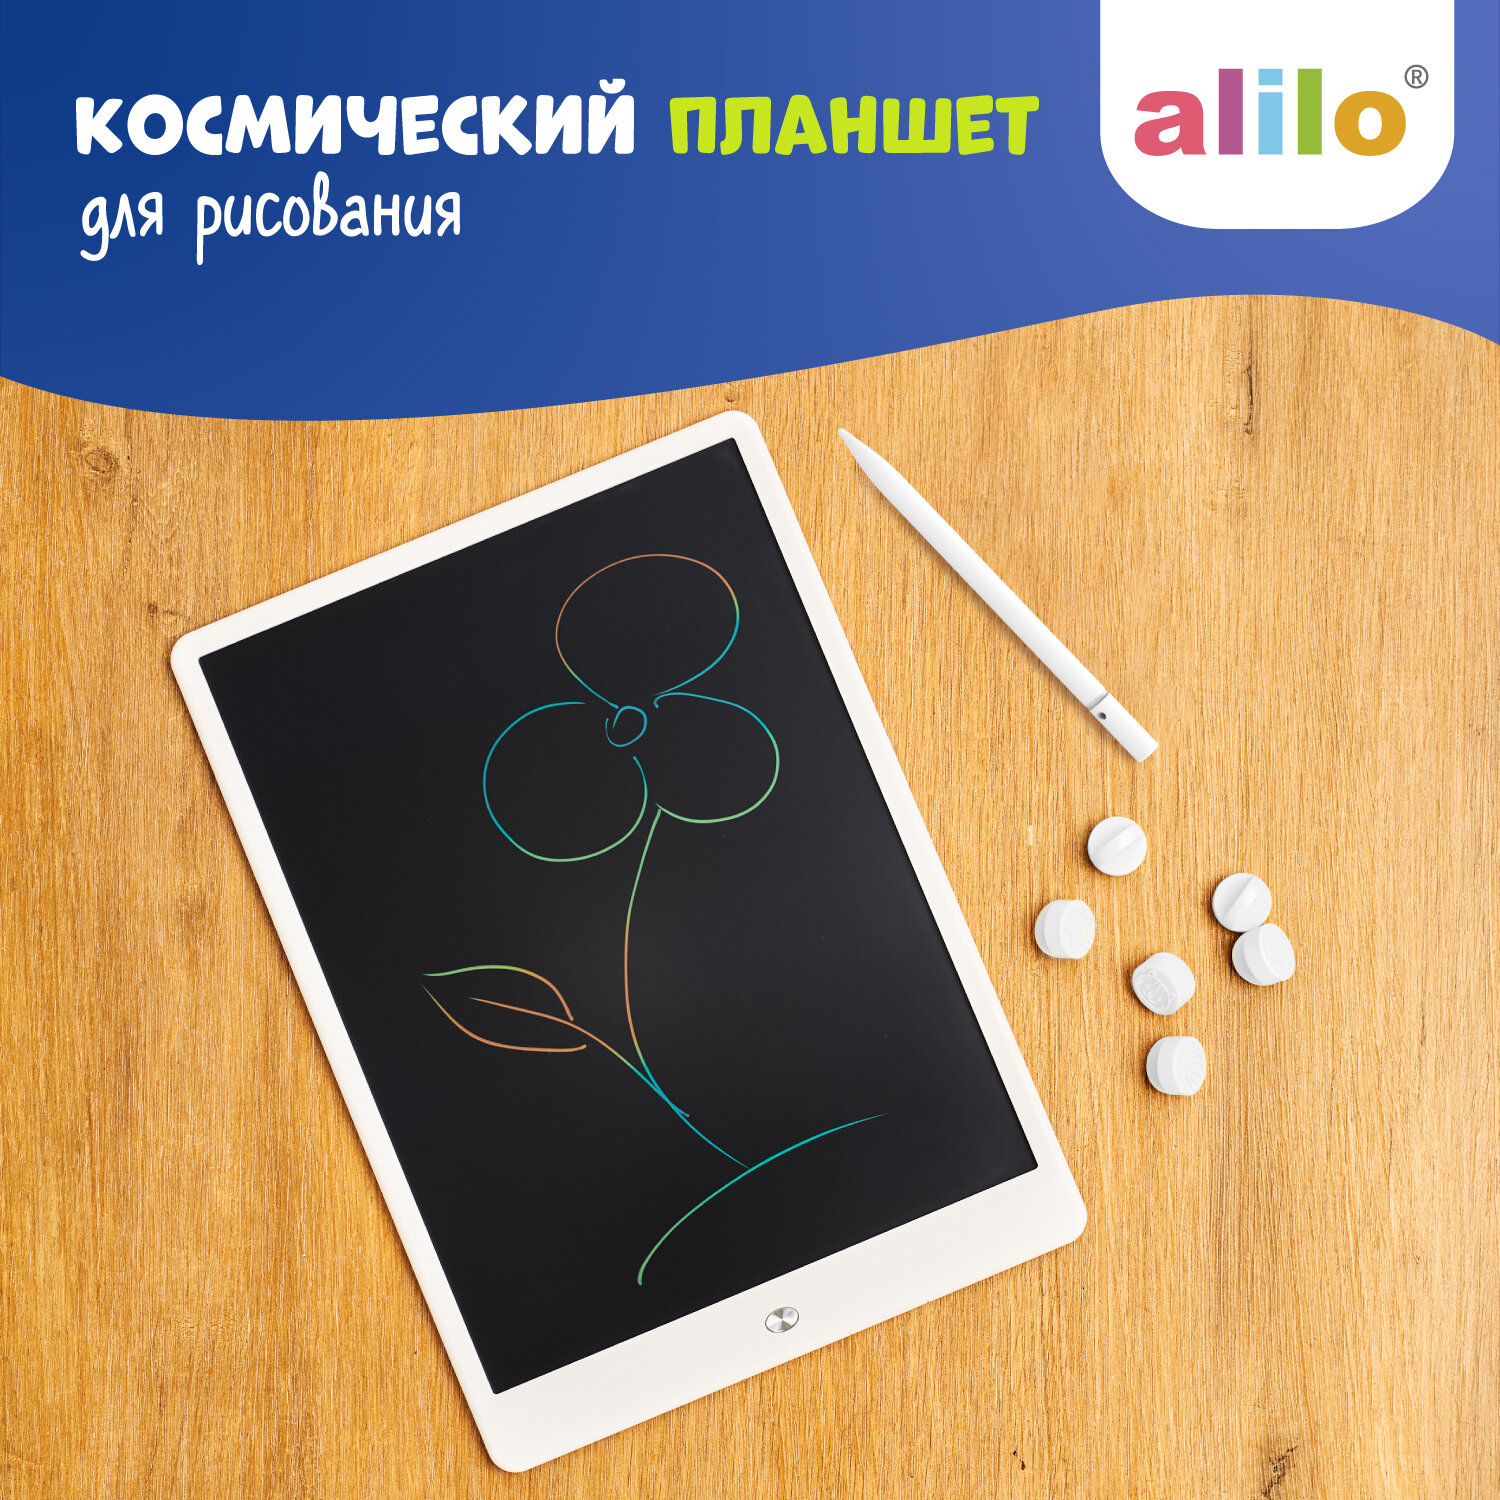 Графический планшет alilo для рисования 10 дюймов со штампиками и стилусом для детей